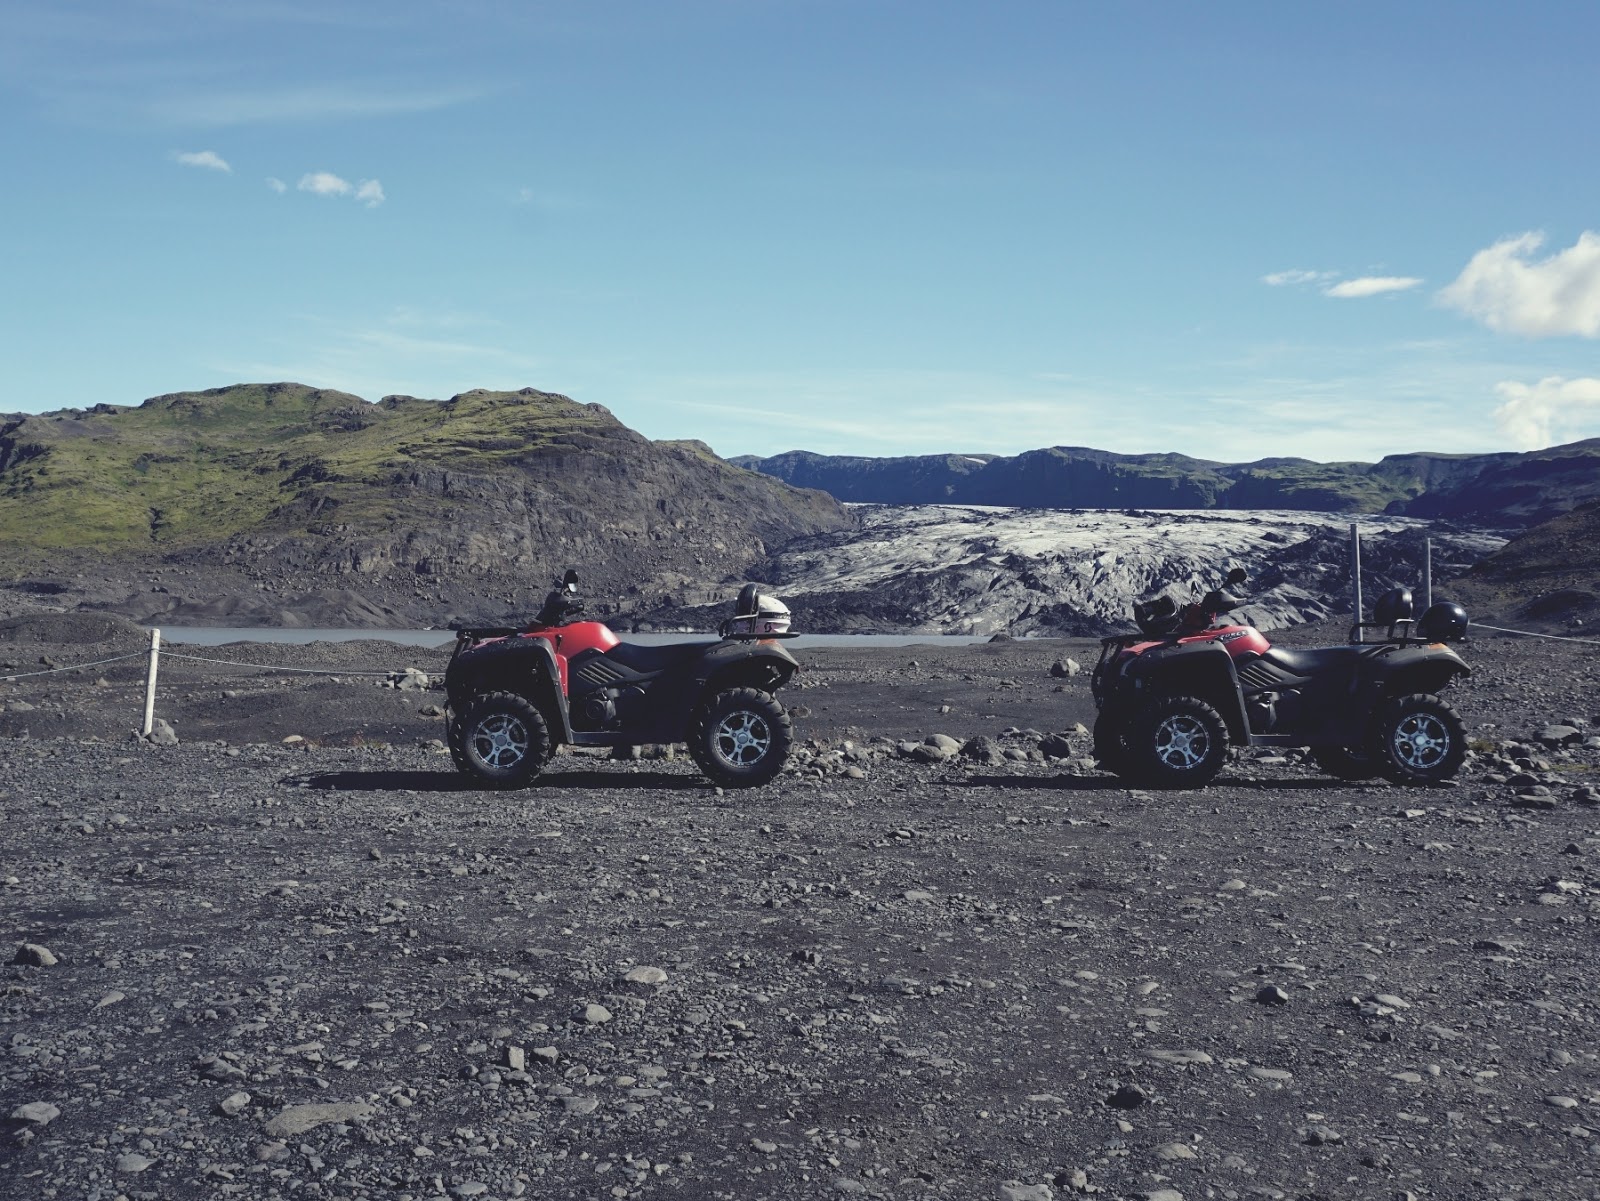 Lodowiec Solheimajokull, lodowiec, Myrdalsjokull, Islandia, południowa Islandia, zwiedzanie Islandii, panidorcia, Pani Dorcia blog, blog o Islandii, co zwiedzić w Islandii